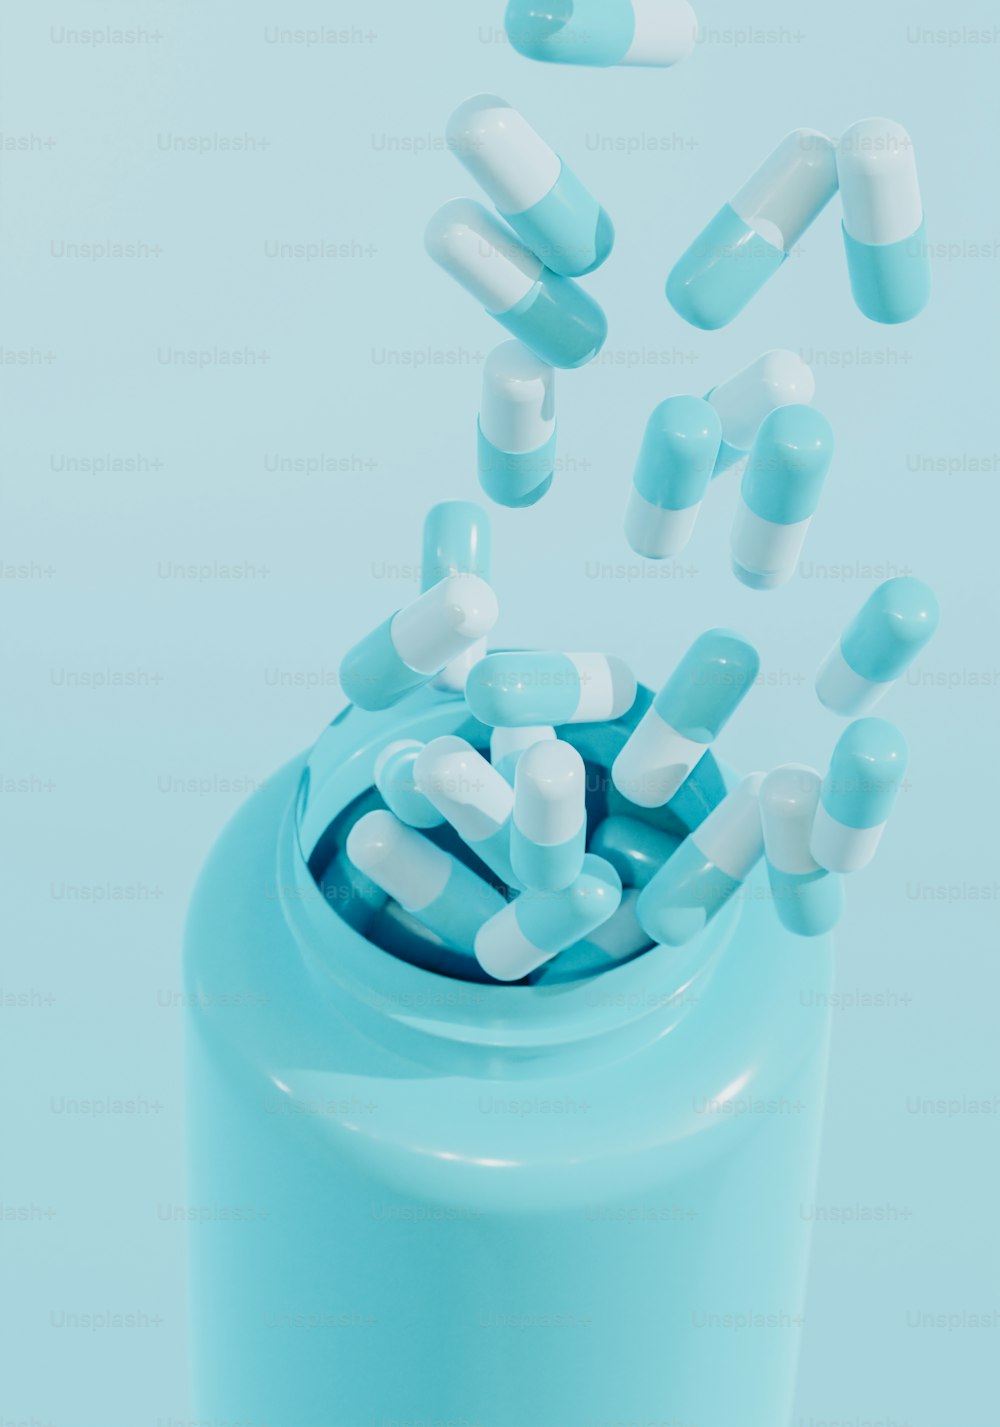 píldoras que se caen de un frasco de píldoras azul